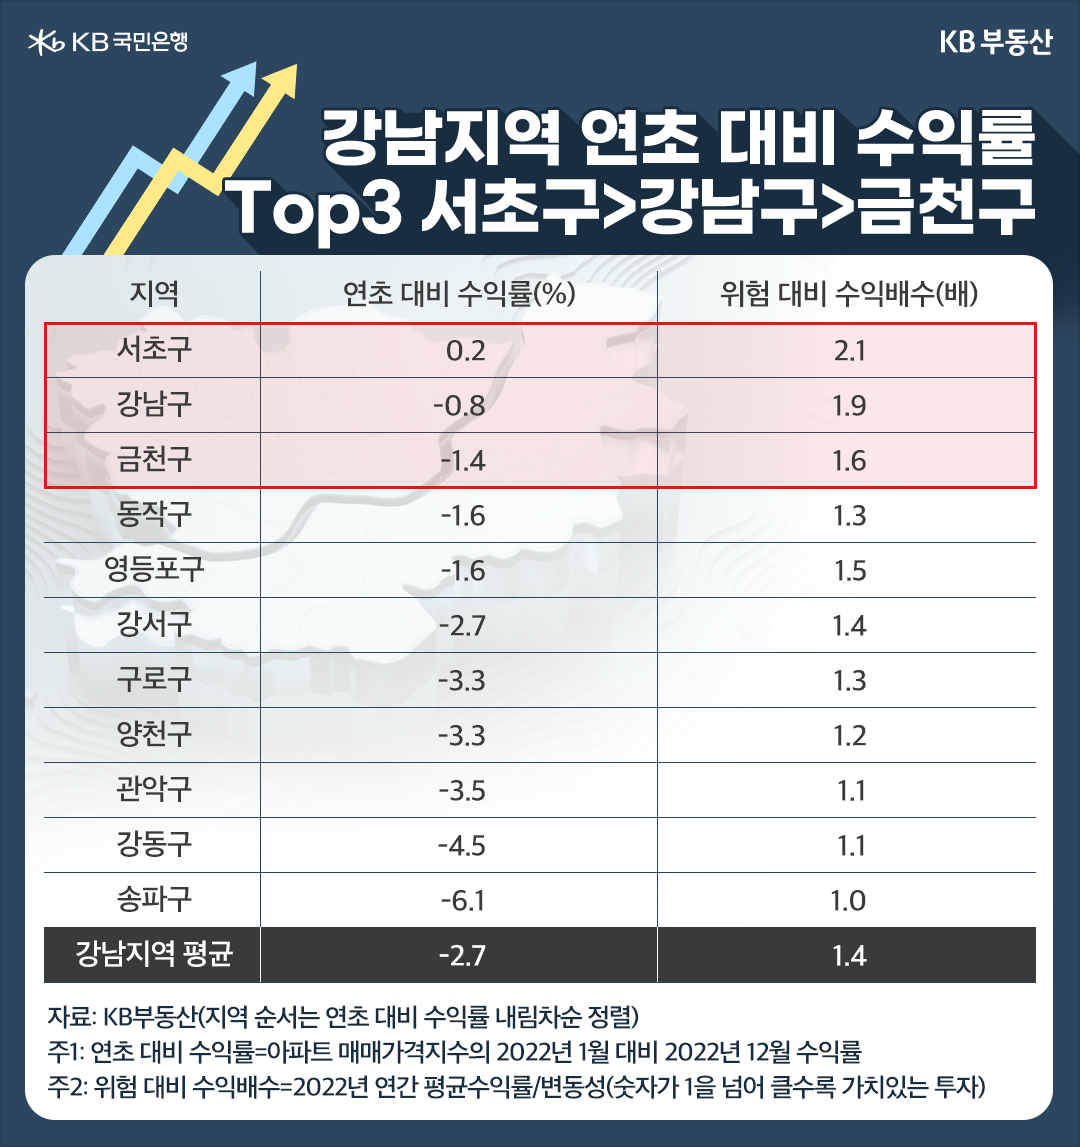 강남지역 연초 대비 수익률 TOP3 서초구>강남구>금천구